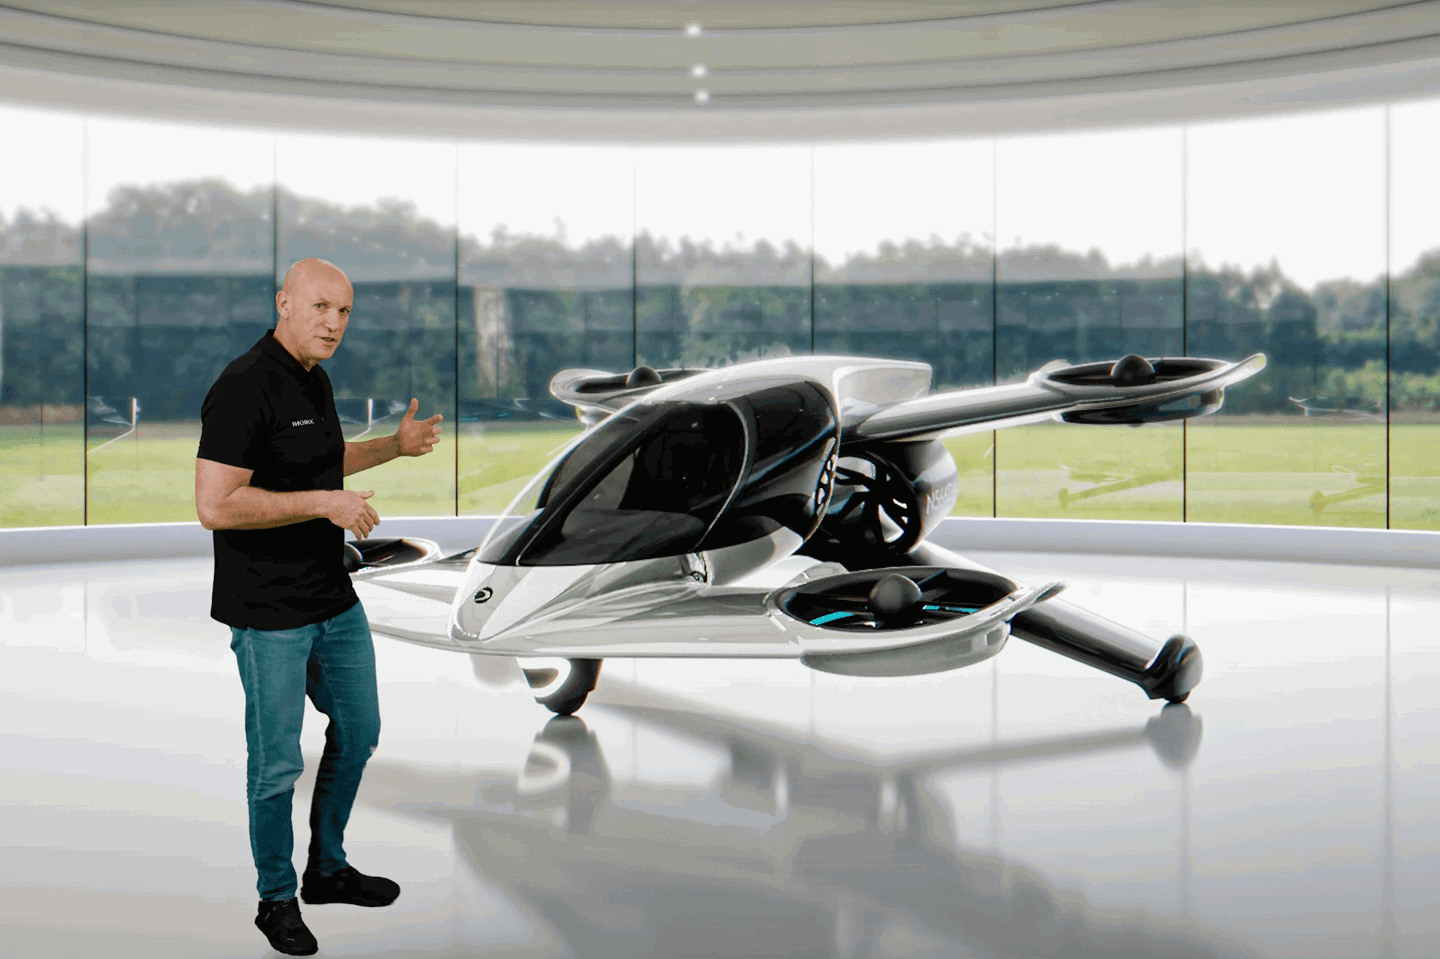 Doroni 发布旗舰电动垂直起降飞行器 H1-X：40 分钟续航、最高时速超 190 公里